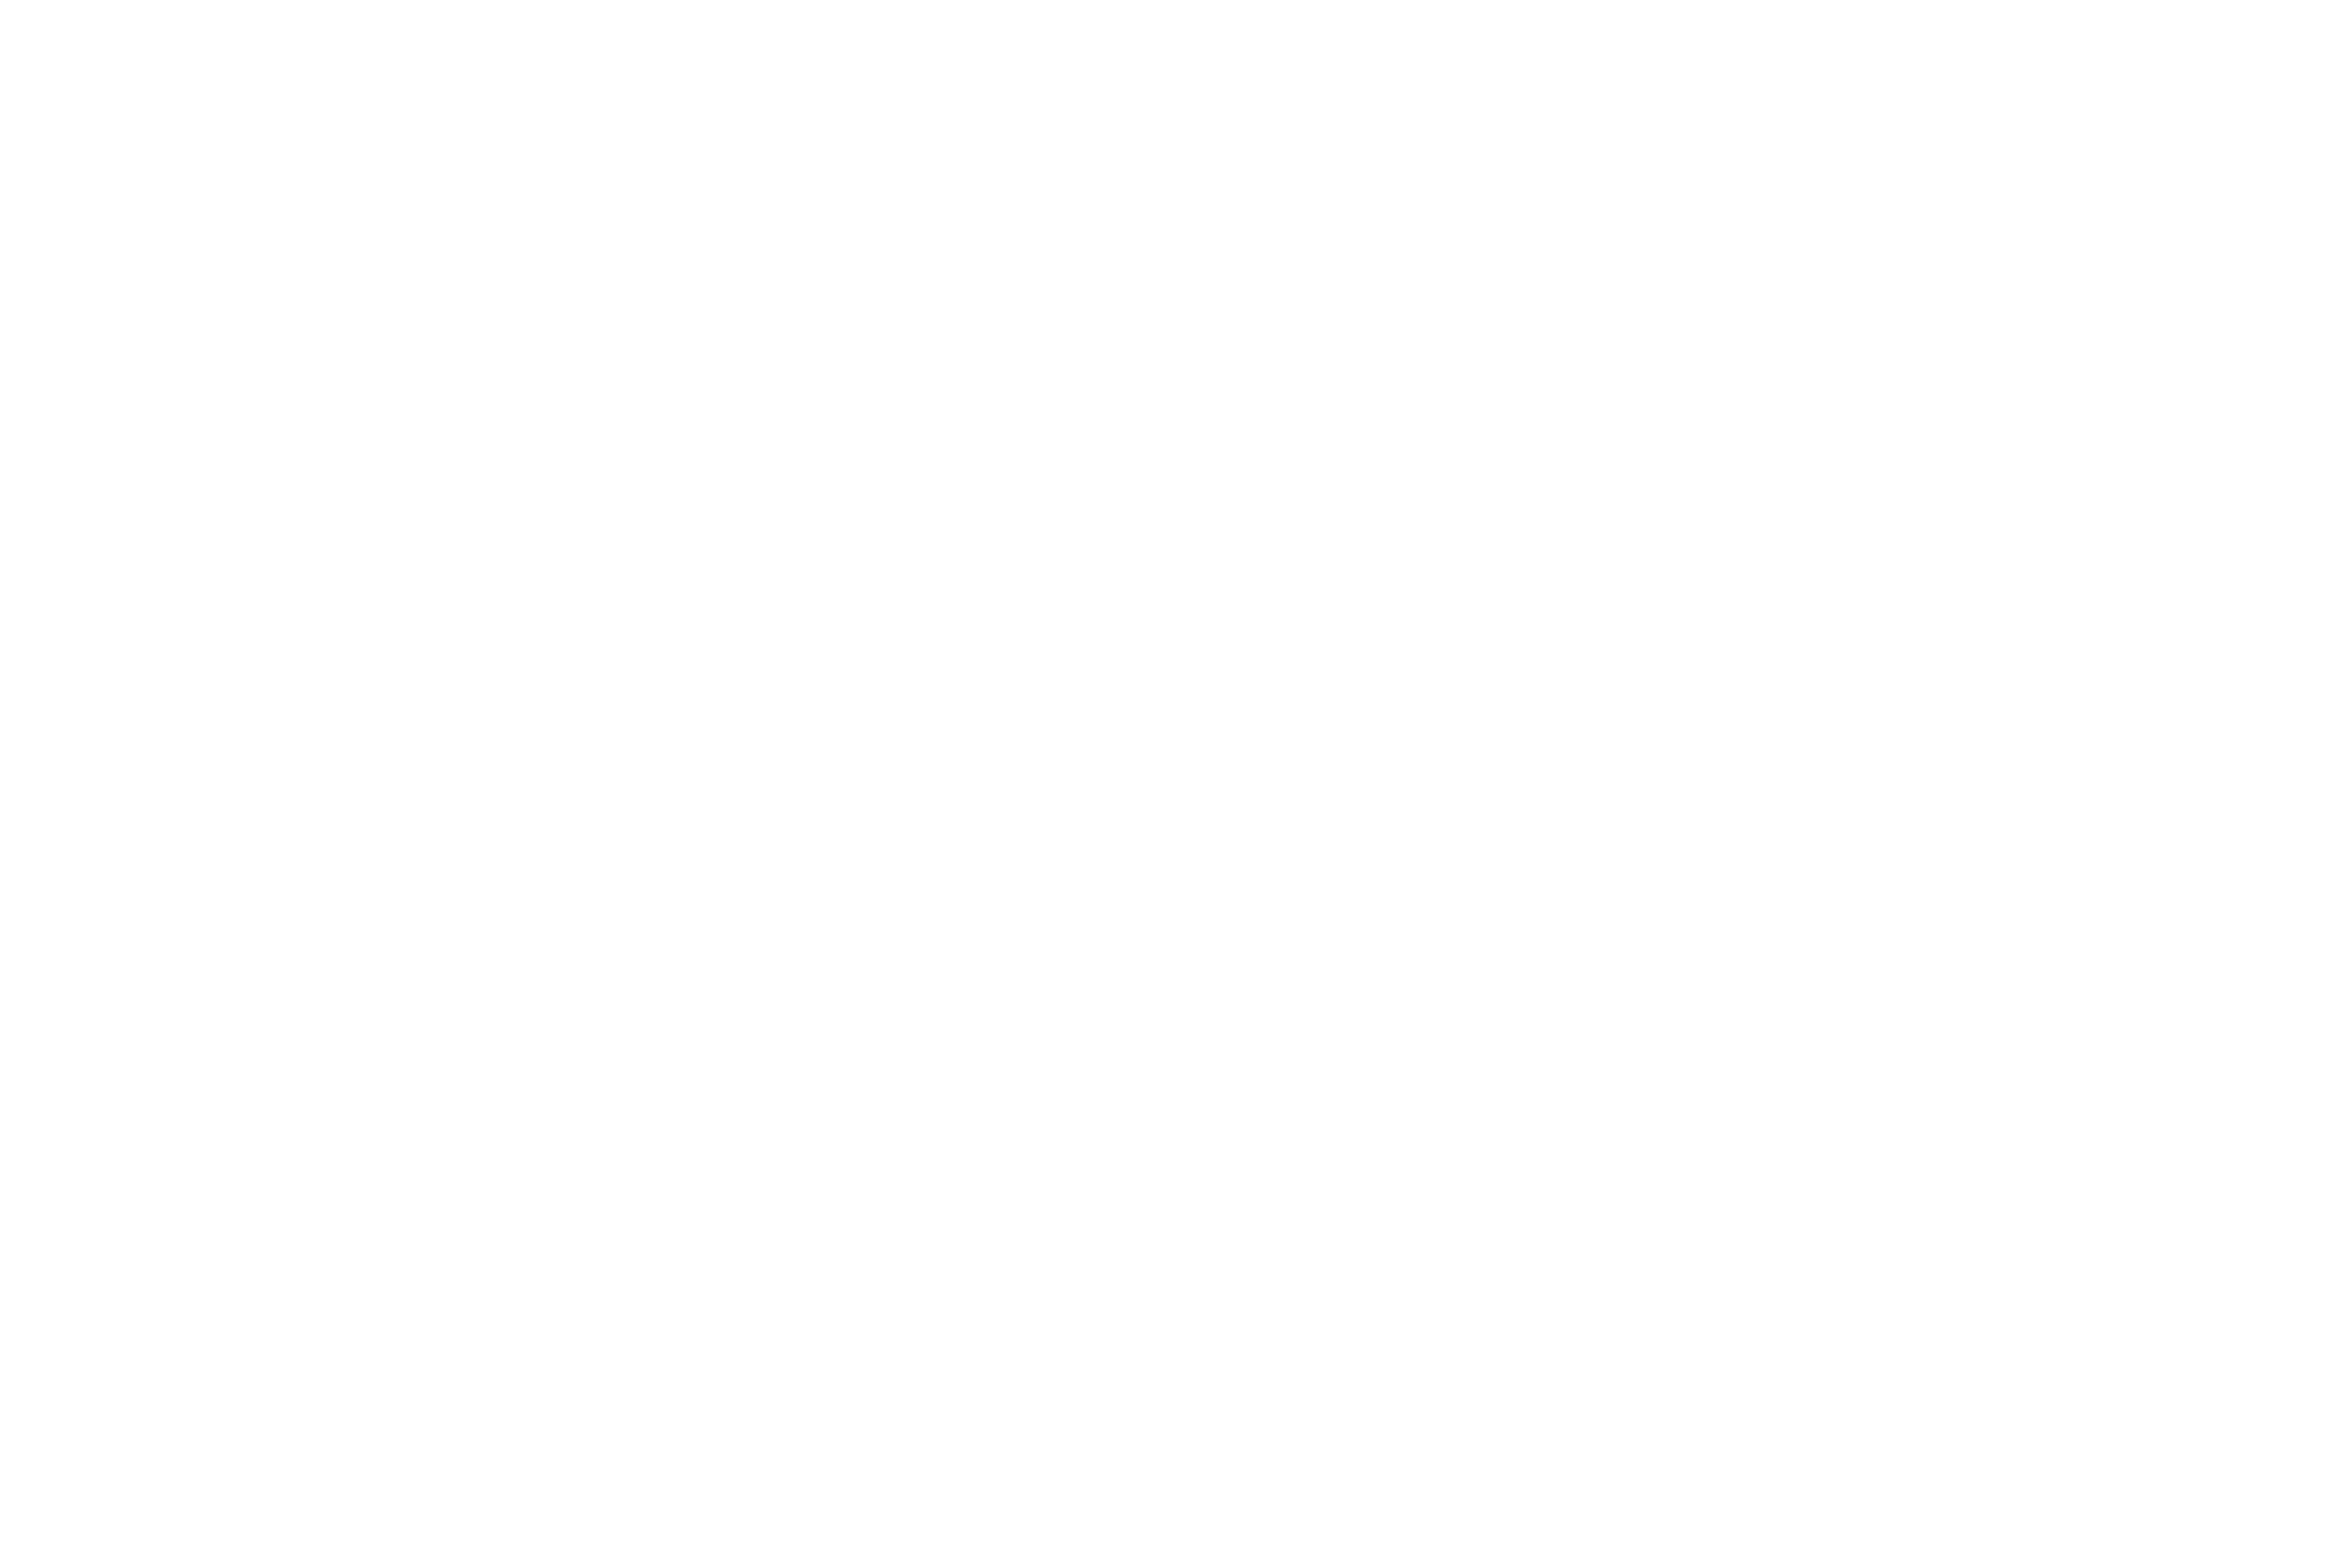 Ceron Focus